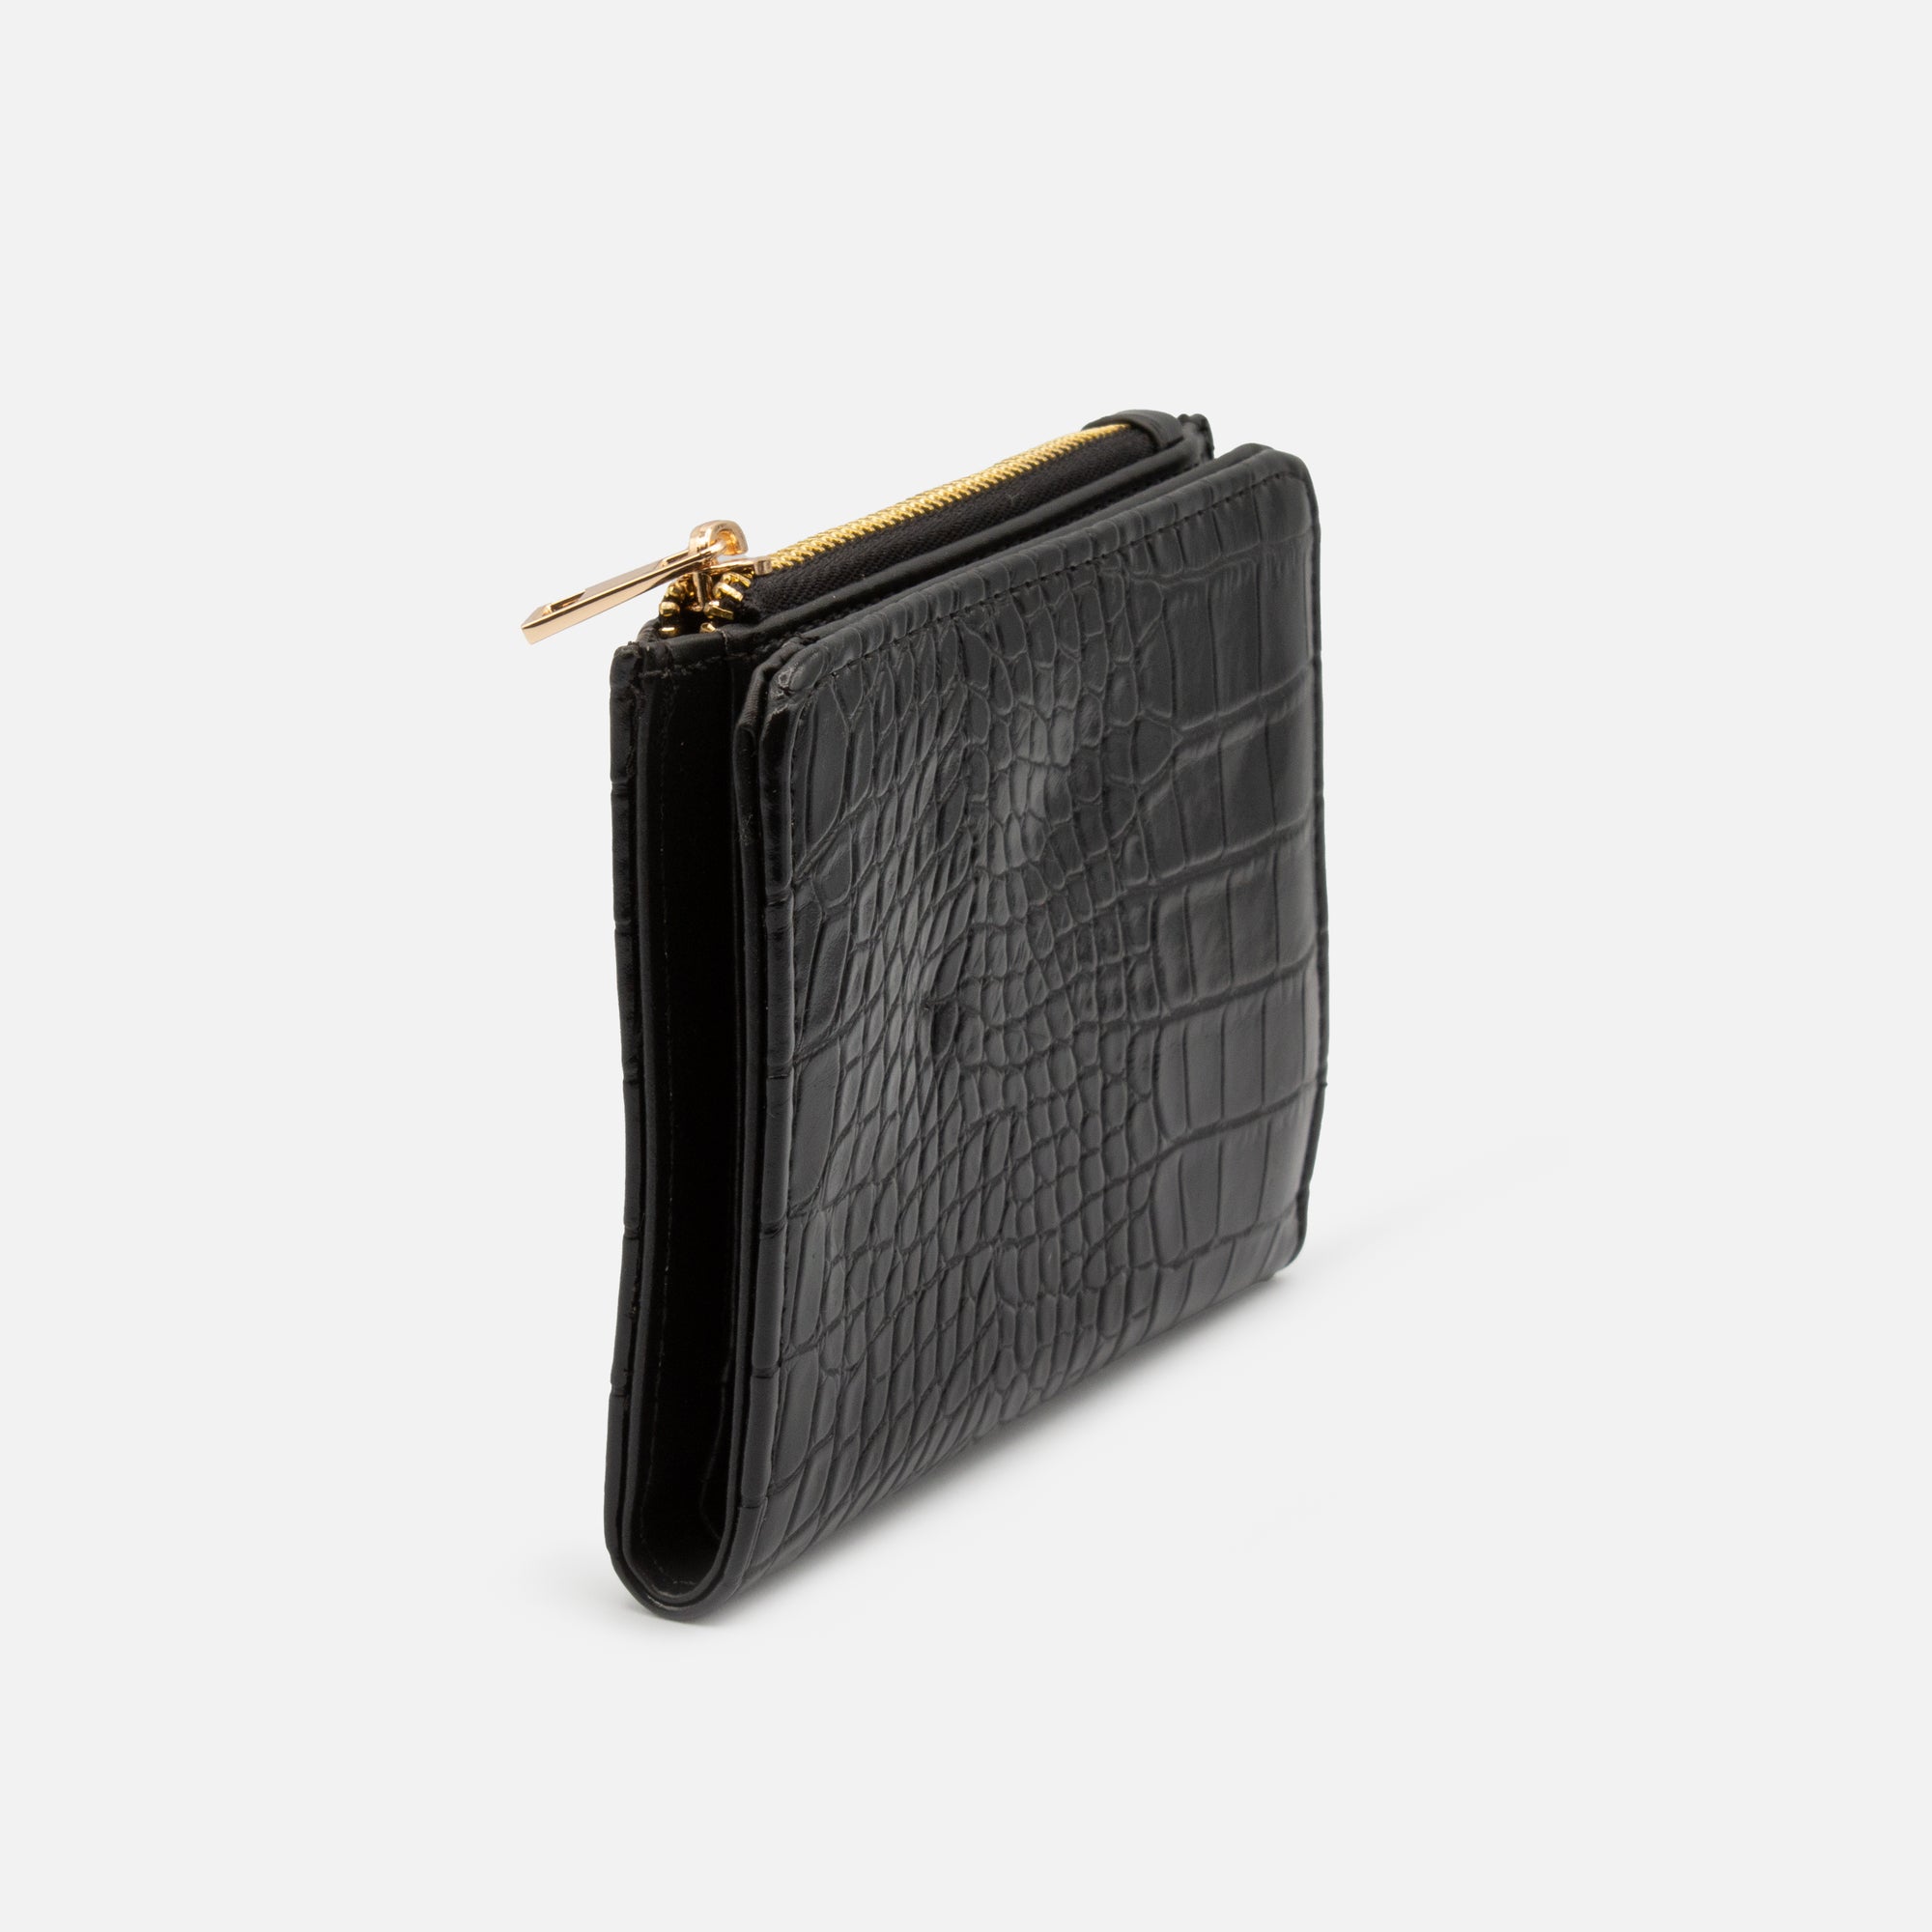 Black crocodile skin pattern wallet